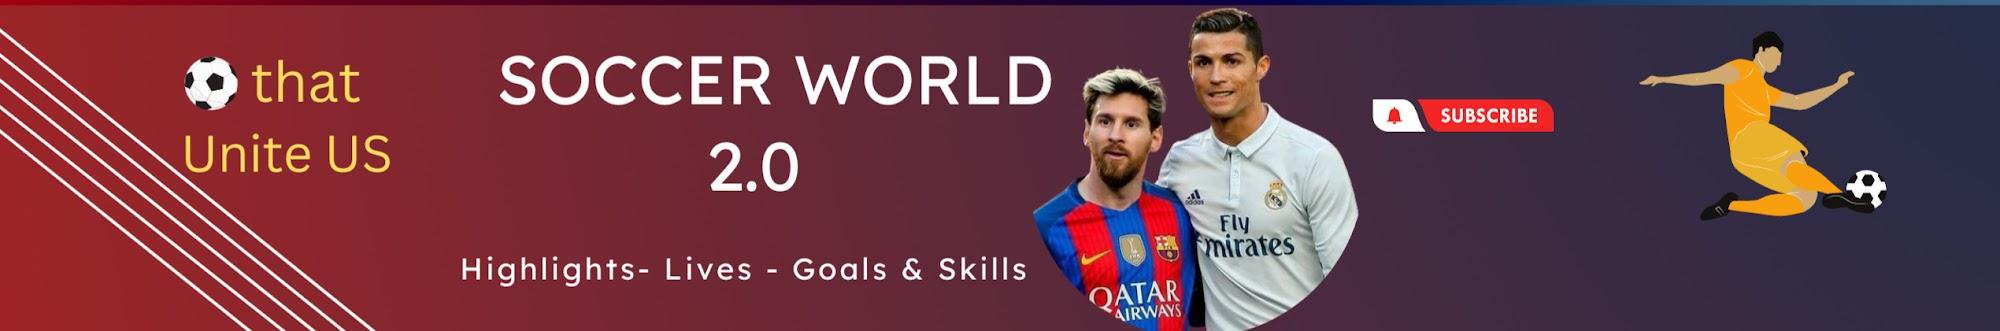 Soccer World 2.0